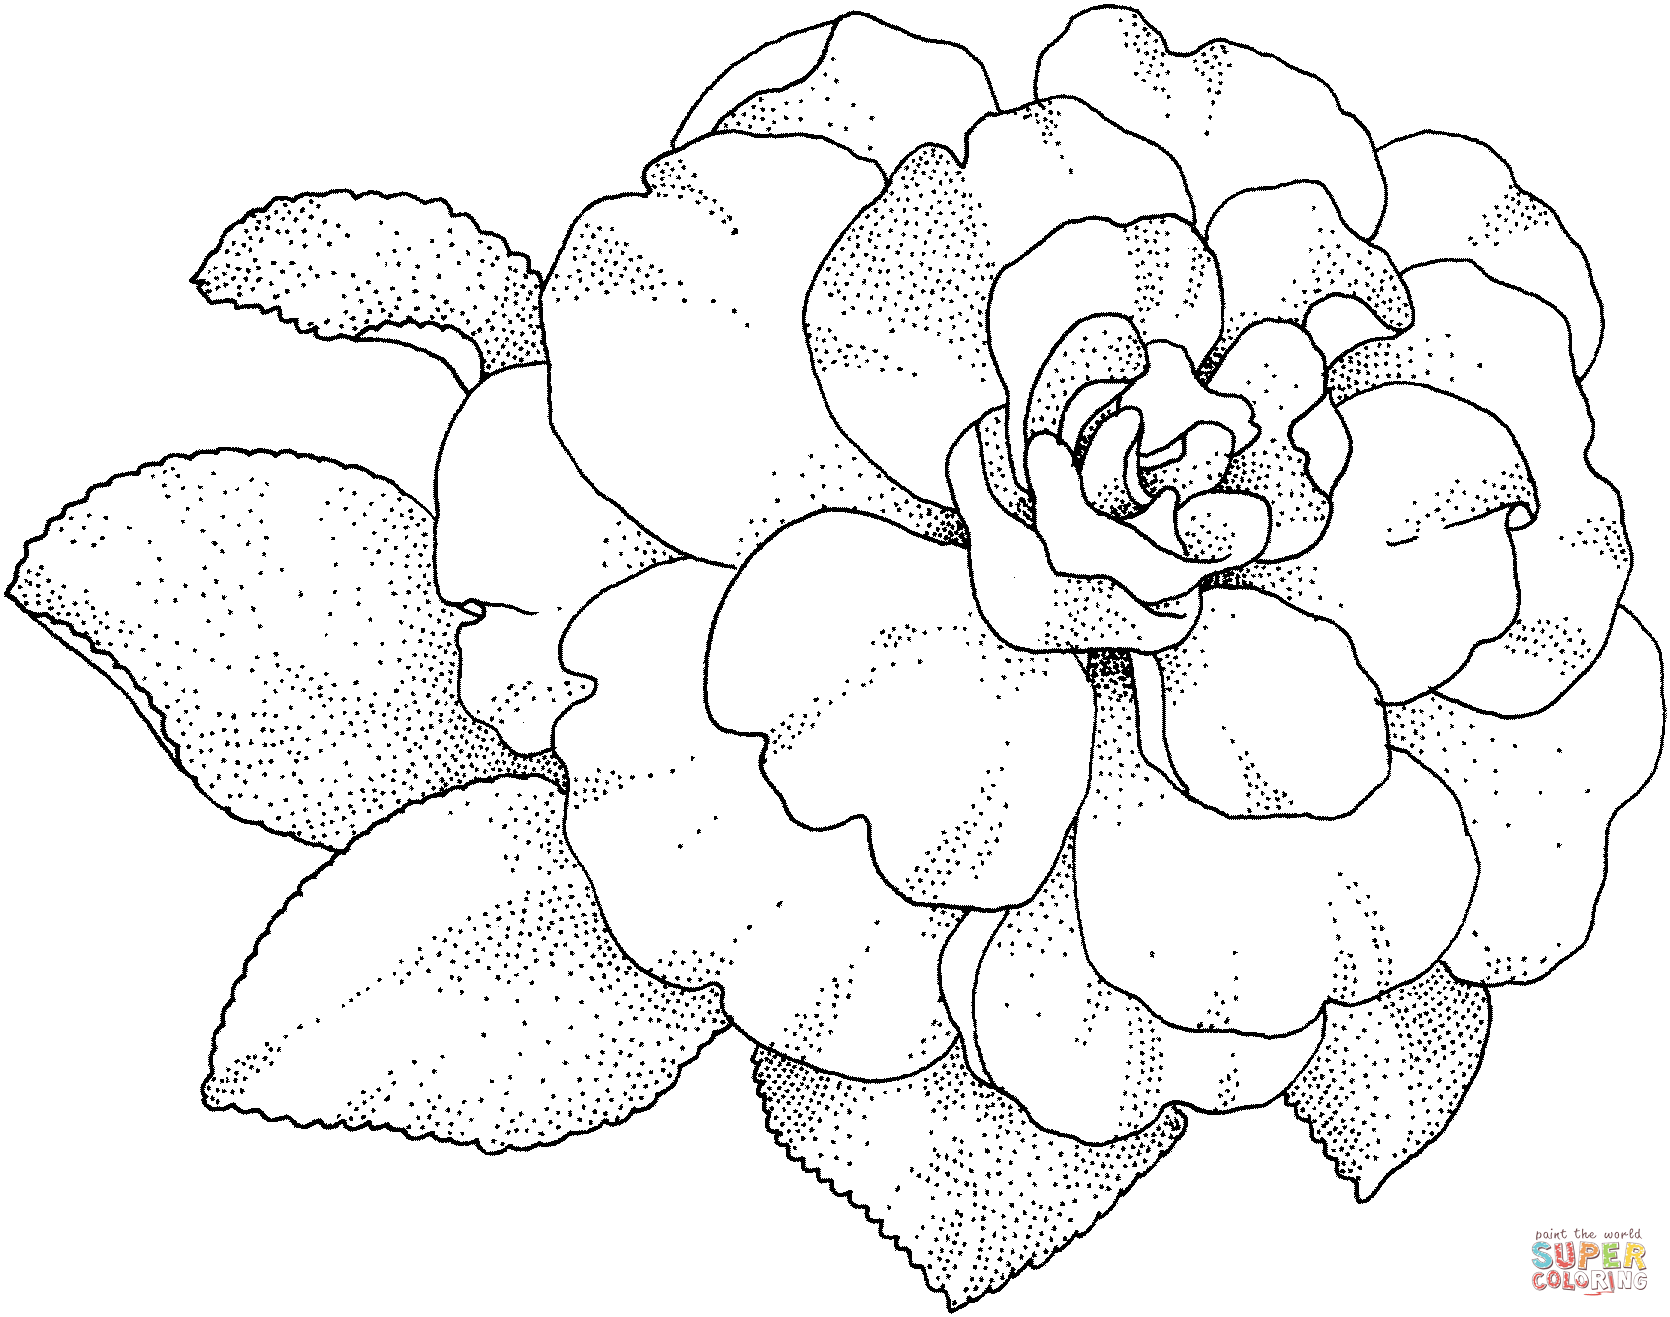 https://cdn.lowgif.com/small/514f41765135d5dd-http-coloringtoolkit-com-camellia-blossom-super-coloring.gif